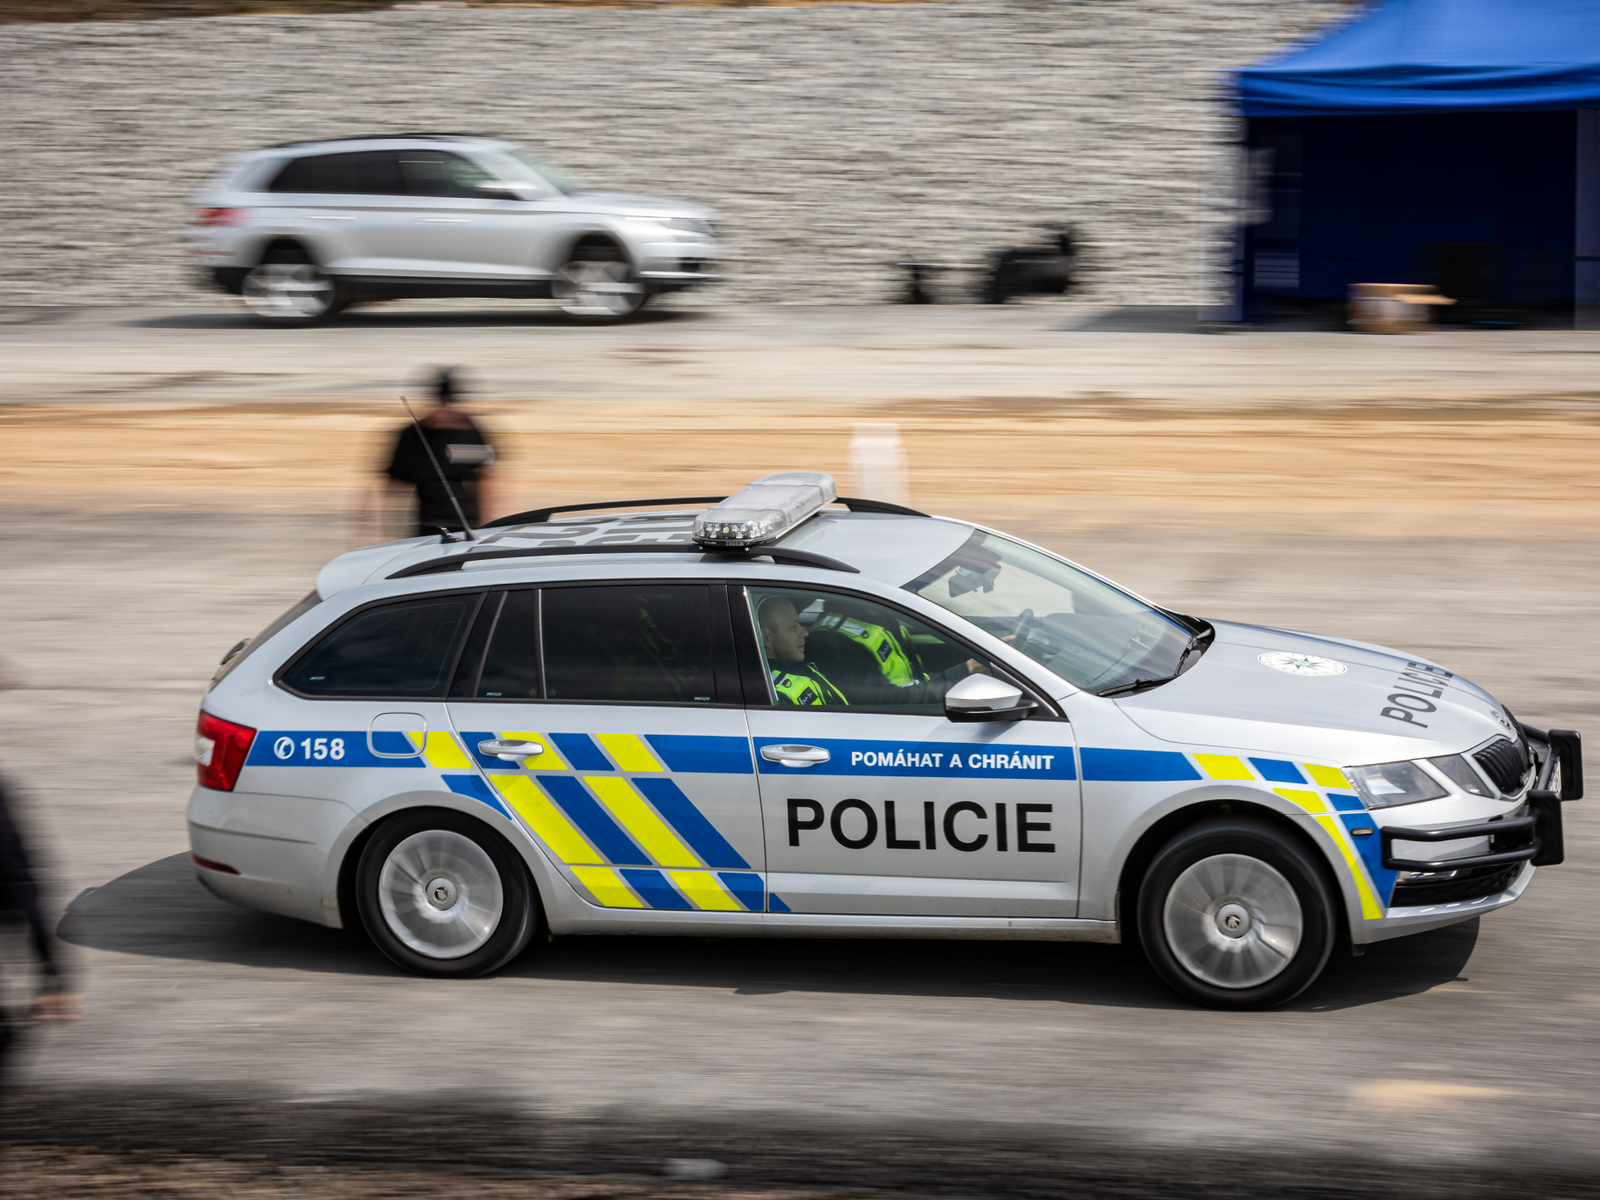 Policejní vozidlo rychlé